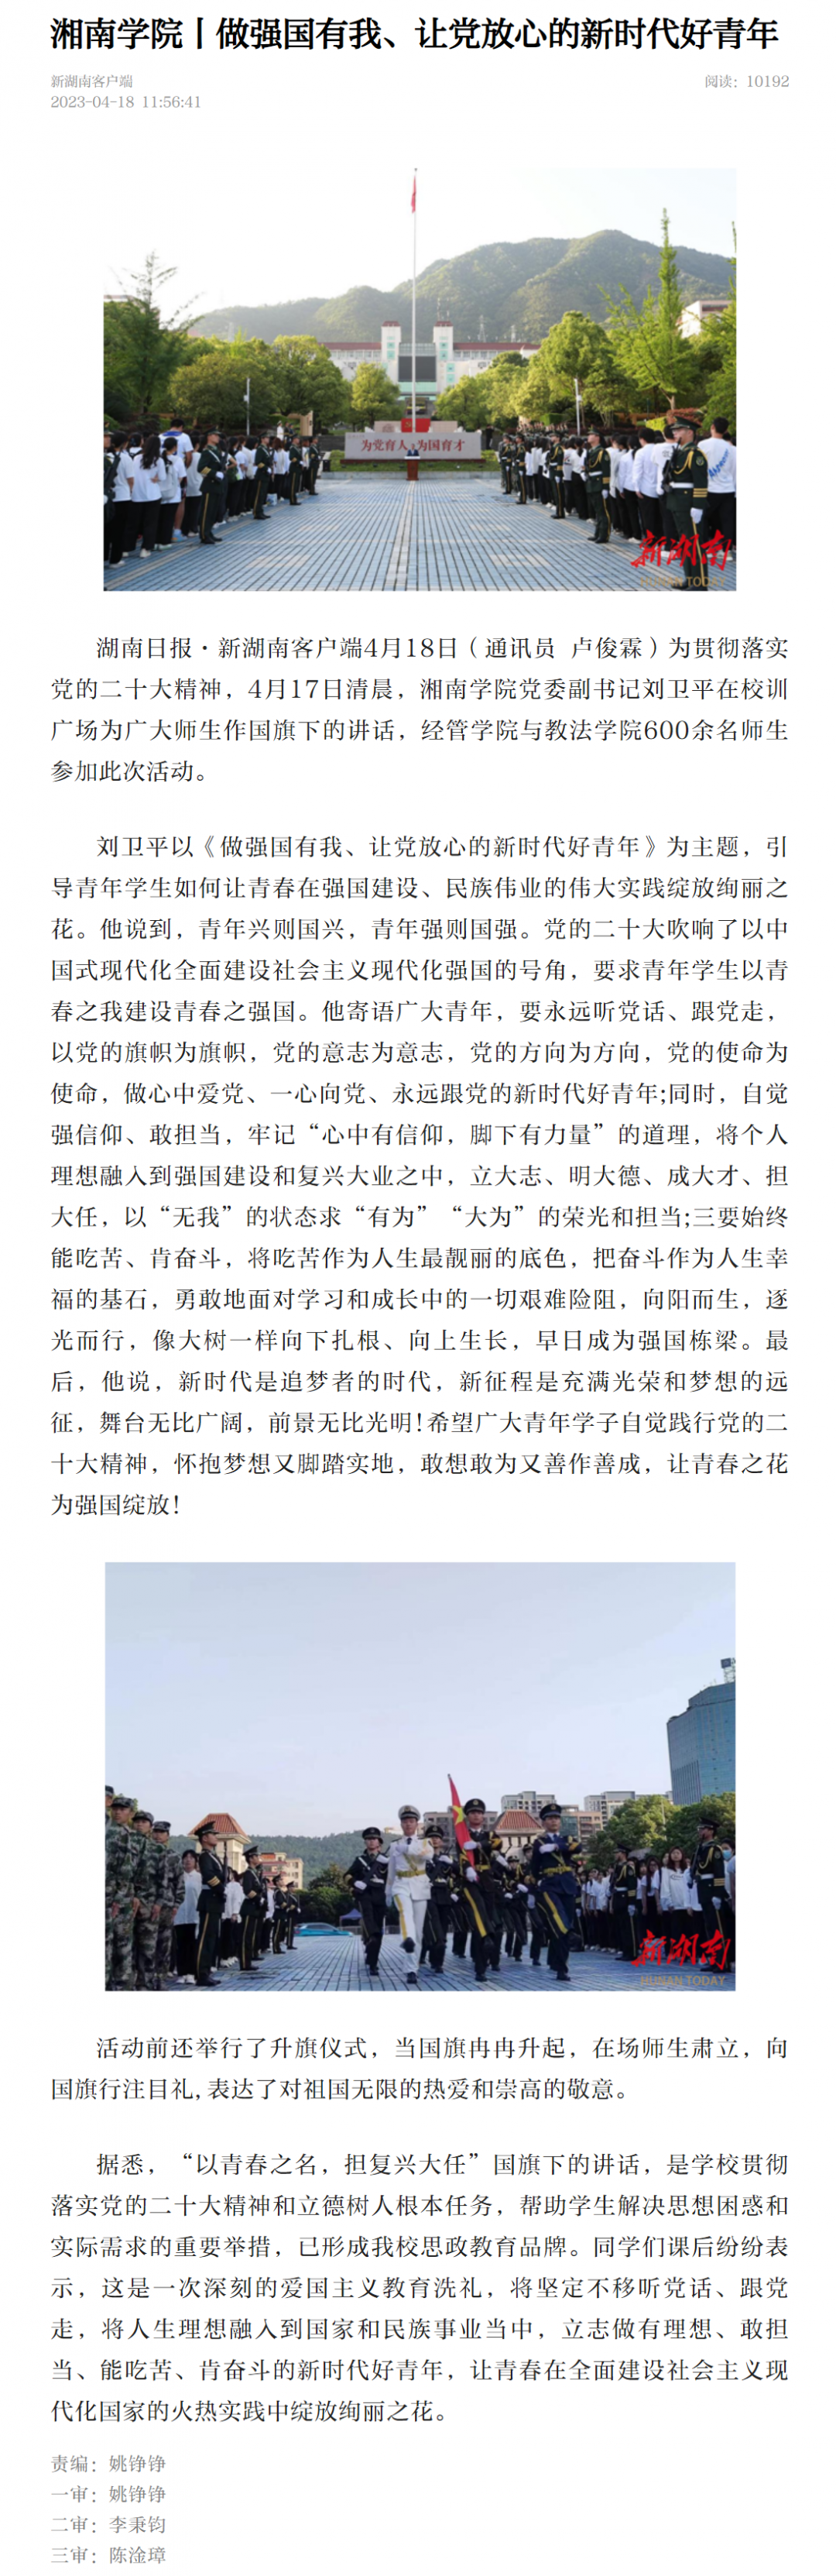 万赢娱乐电子游戏(中国)官方网站丨做强国有我、让党放心的新时代好青年-新湖南.png